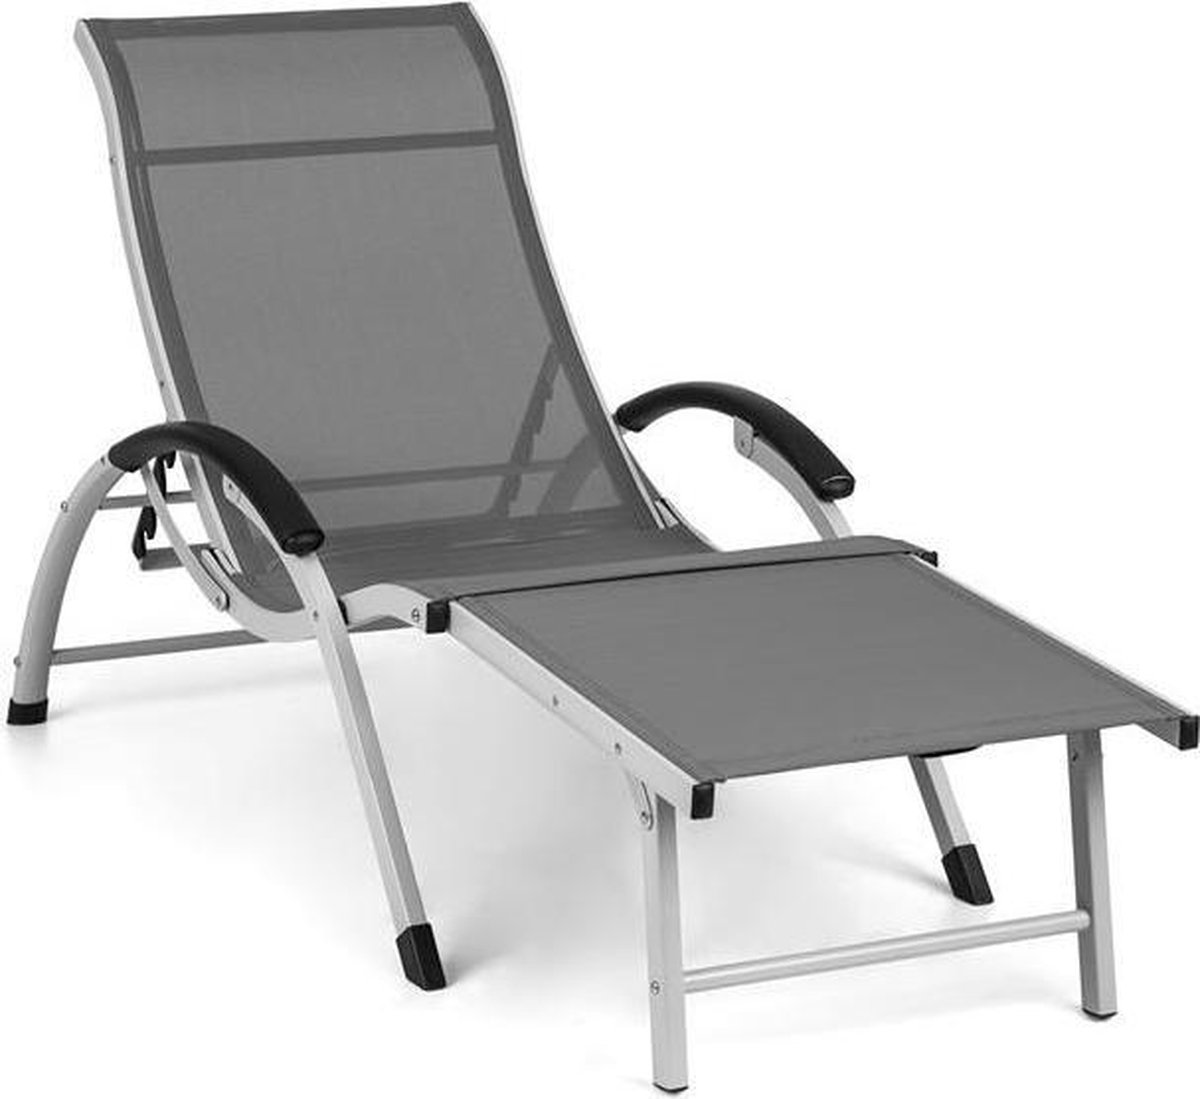 blumfeldt Sunnyvale ligstoel met voetensteun - 4 standen - weerbestendig aluminium frame - 70% PVC, 30% polyester bekleding